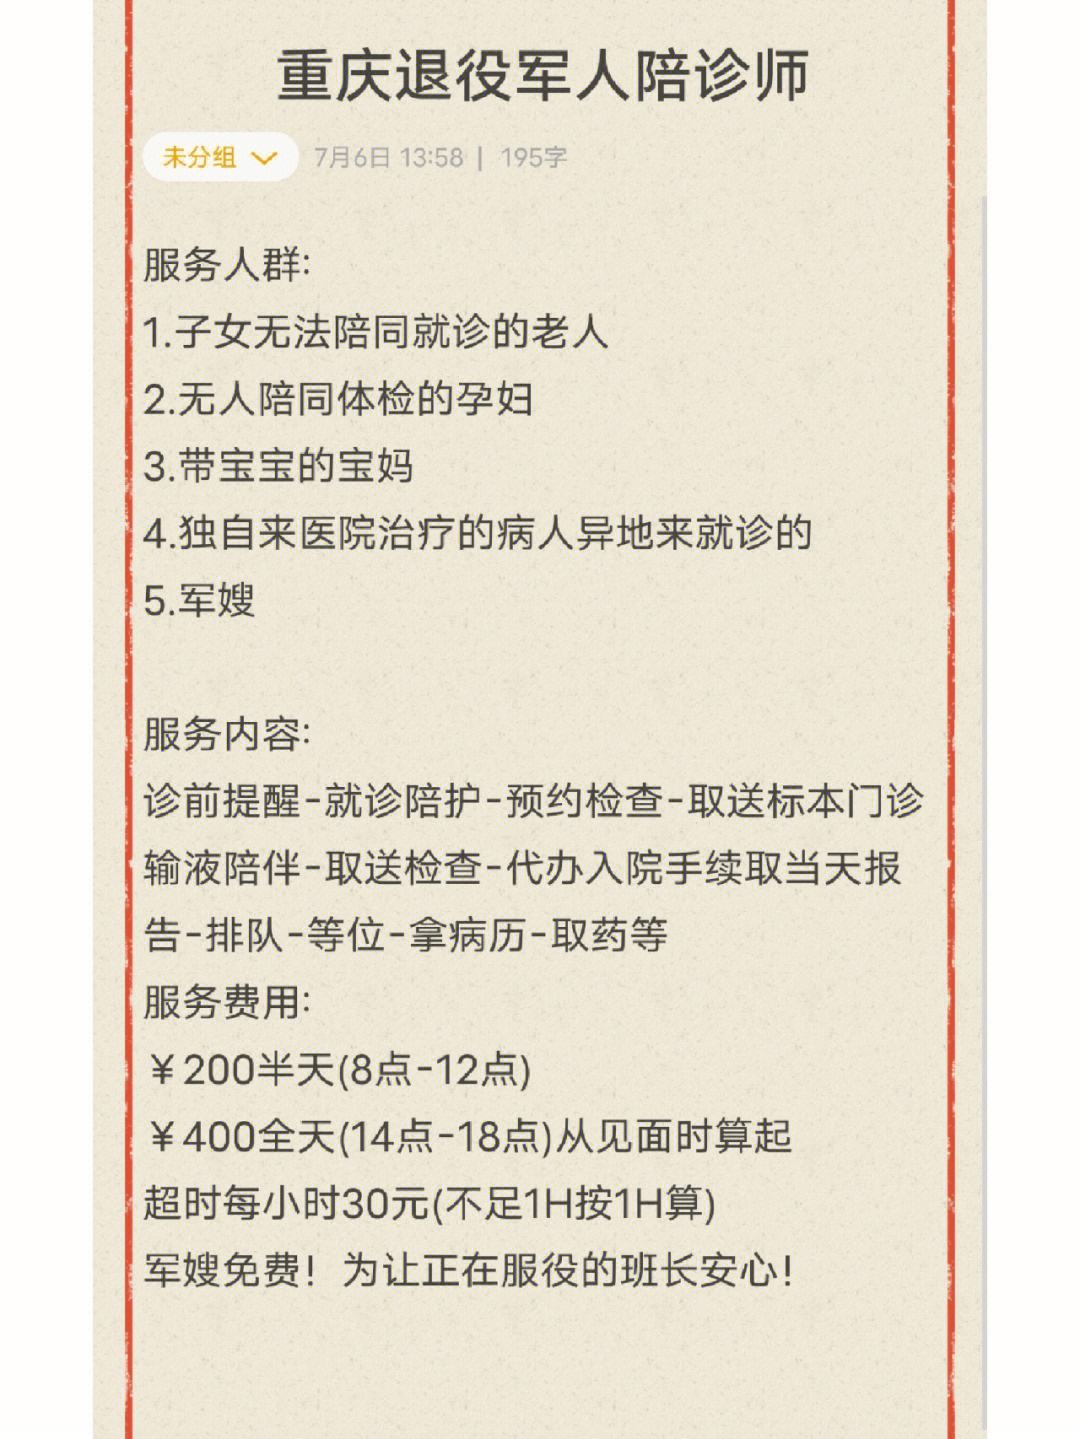 关于重庆医科大学附属口腔医院医院跑腿陪诊挂号，伴您医路畅通的信息